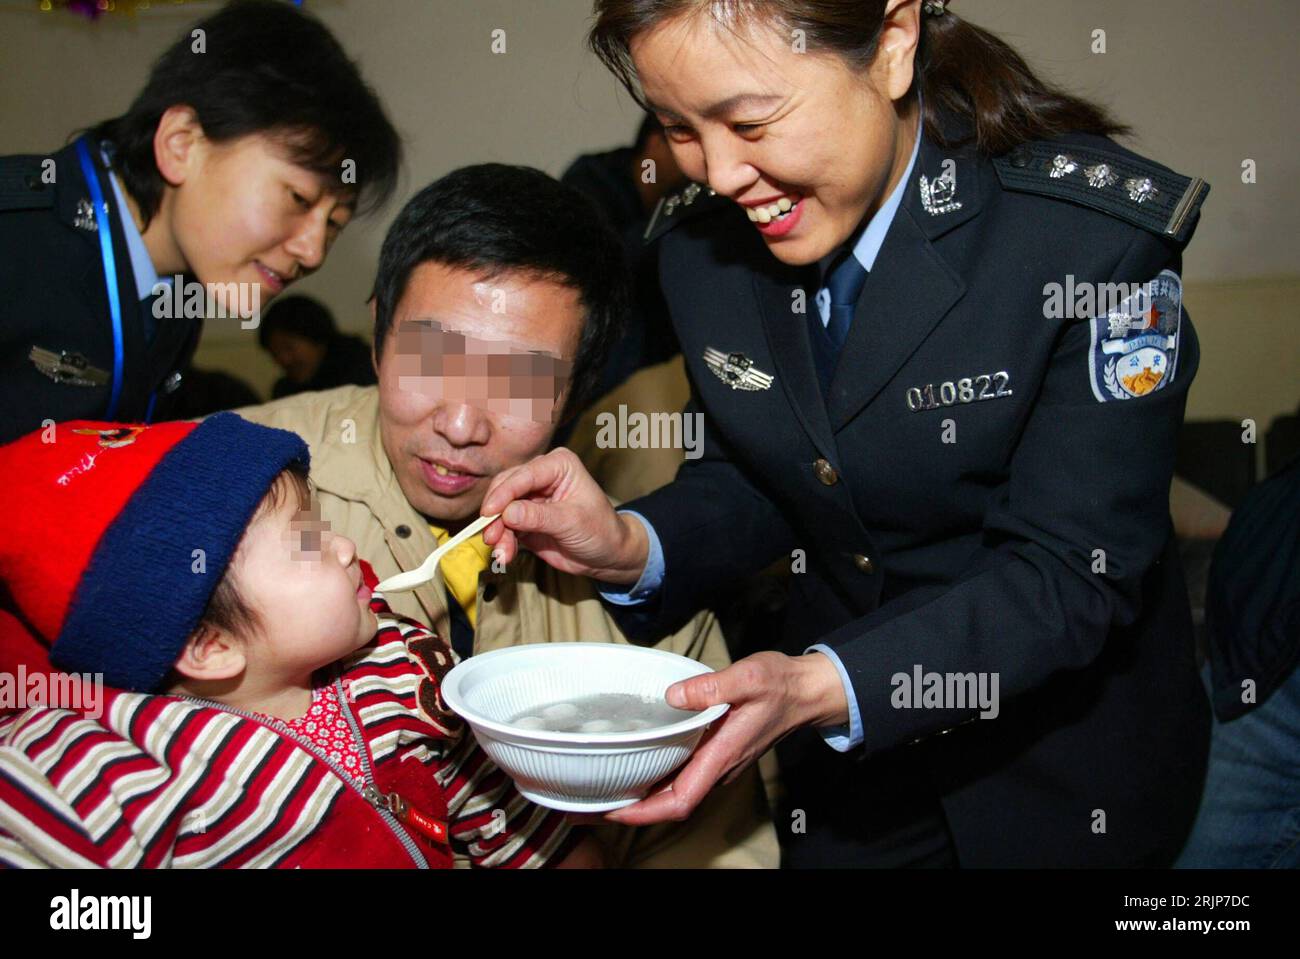 Bildnummer: 51115561  Datum: 12.02.2006  Copyright: imago/Xinhua Mitarbeiterin einer Polizeidienststelle füttert das Baby von Häftling Liui (CHN) während einer Feier von Strafgefangenen mit ihren Familien - Peking - PUBLICATIONxNOTxINxCHN, Personen , optimistisch; 2006, Peking, Fotostory, chinesisches, Laternenfest, Gefangener, Gefangene, Häftlinge, Inhaftierter, Inhaftierte, inhaftiert, Mann, Männer, Chinese, Chinesen, Kind, Kinder, Familie, Familien, Frauen, Ehefrau, Ehefrauen, Familienzusammenführung, Besuch, Besuche, Gefängnis, Gefängnisse, Haftanstalt, Haftanstalten, Knast, Knäste, , Fürs Stock Photo